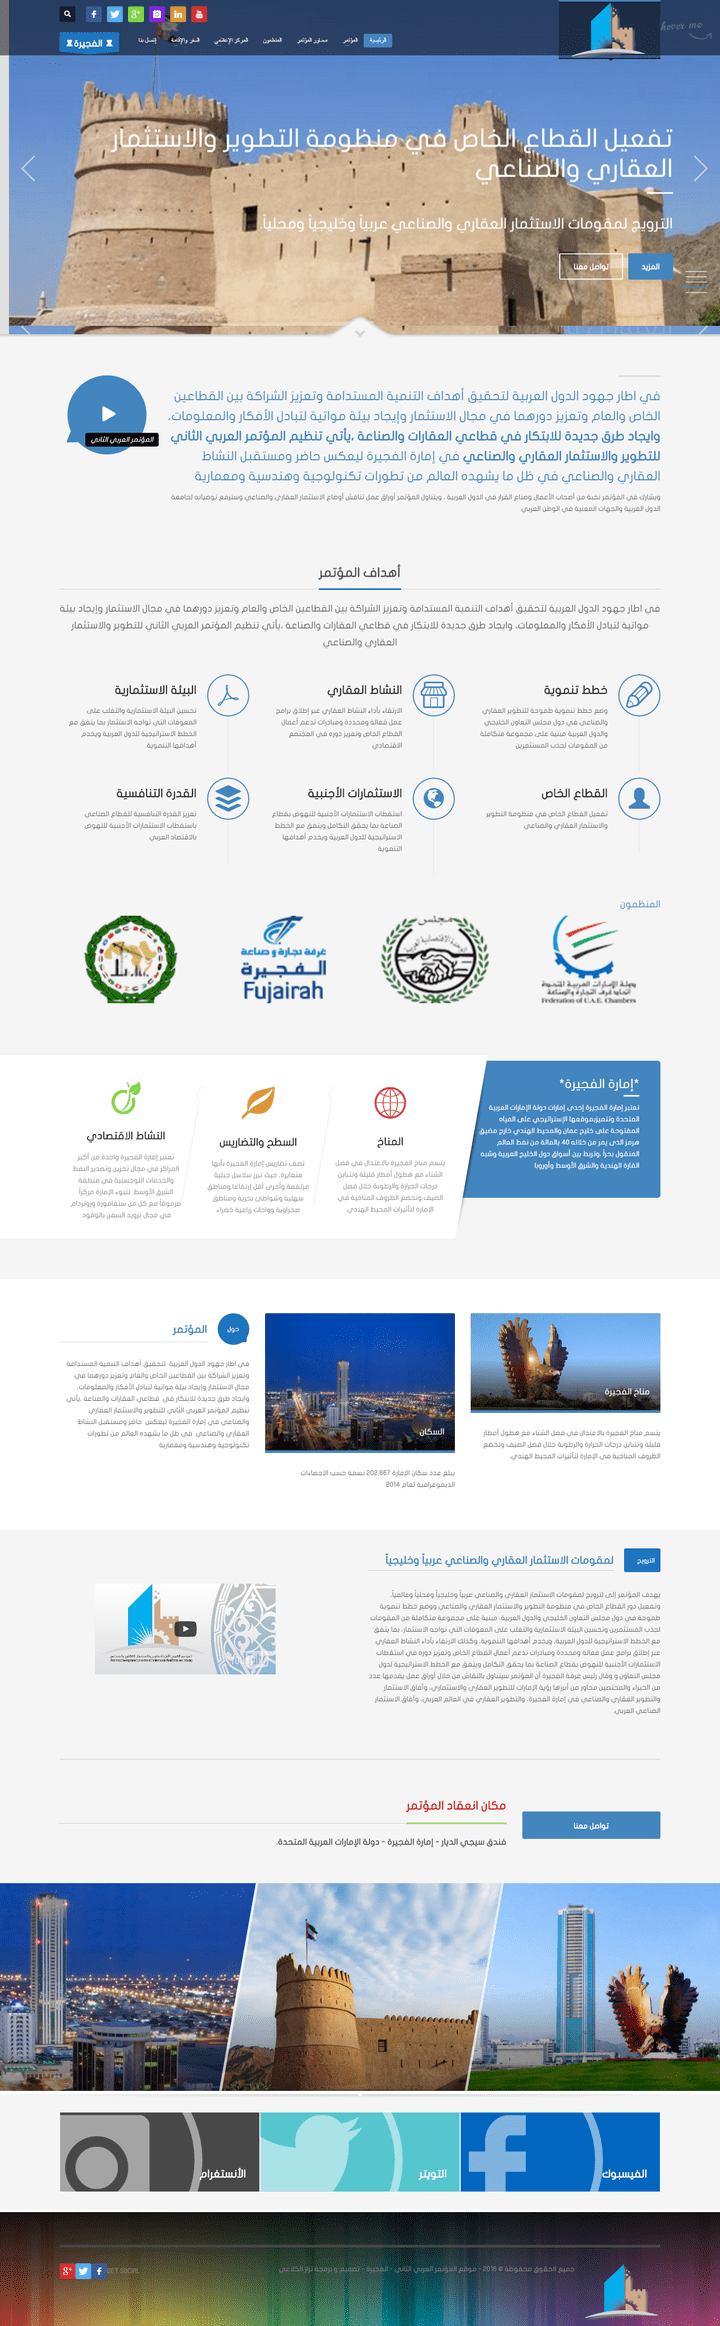 برمجة موقع خاص بالمؤتمر الثانى لأستمثار العقاري فى الأمارات العربية المتحدة